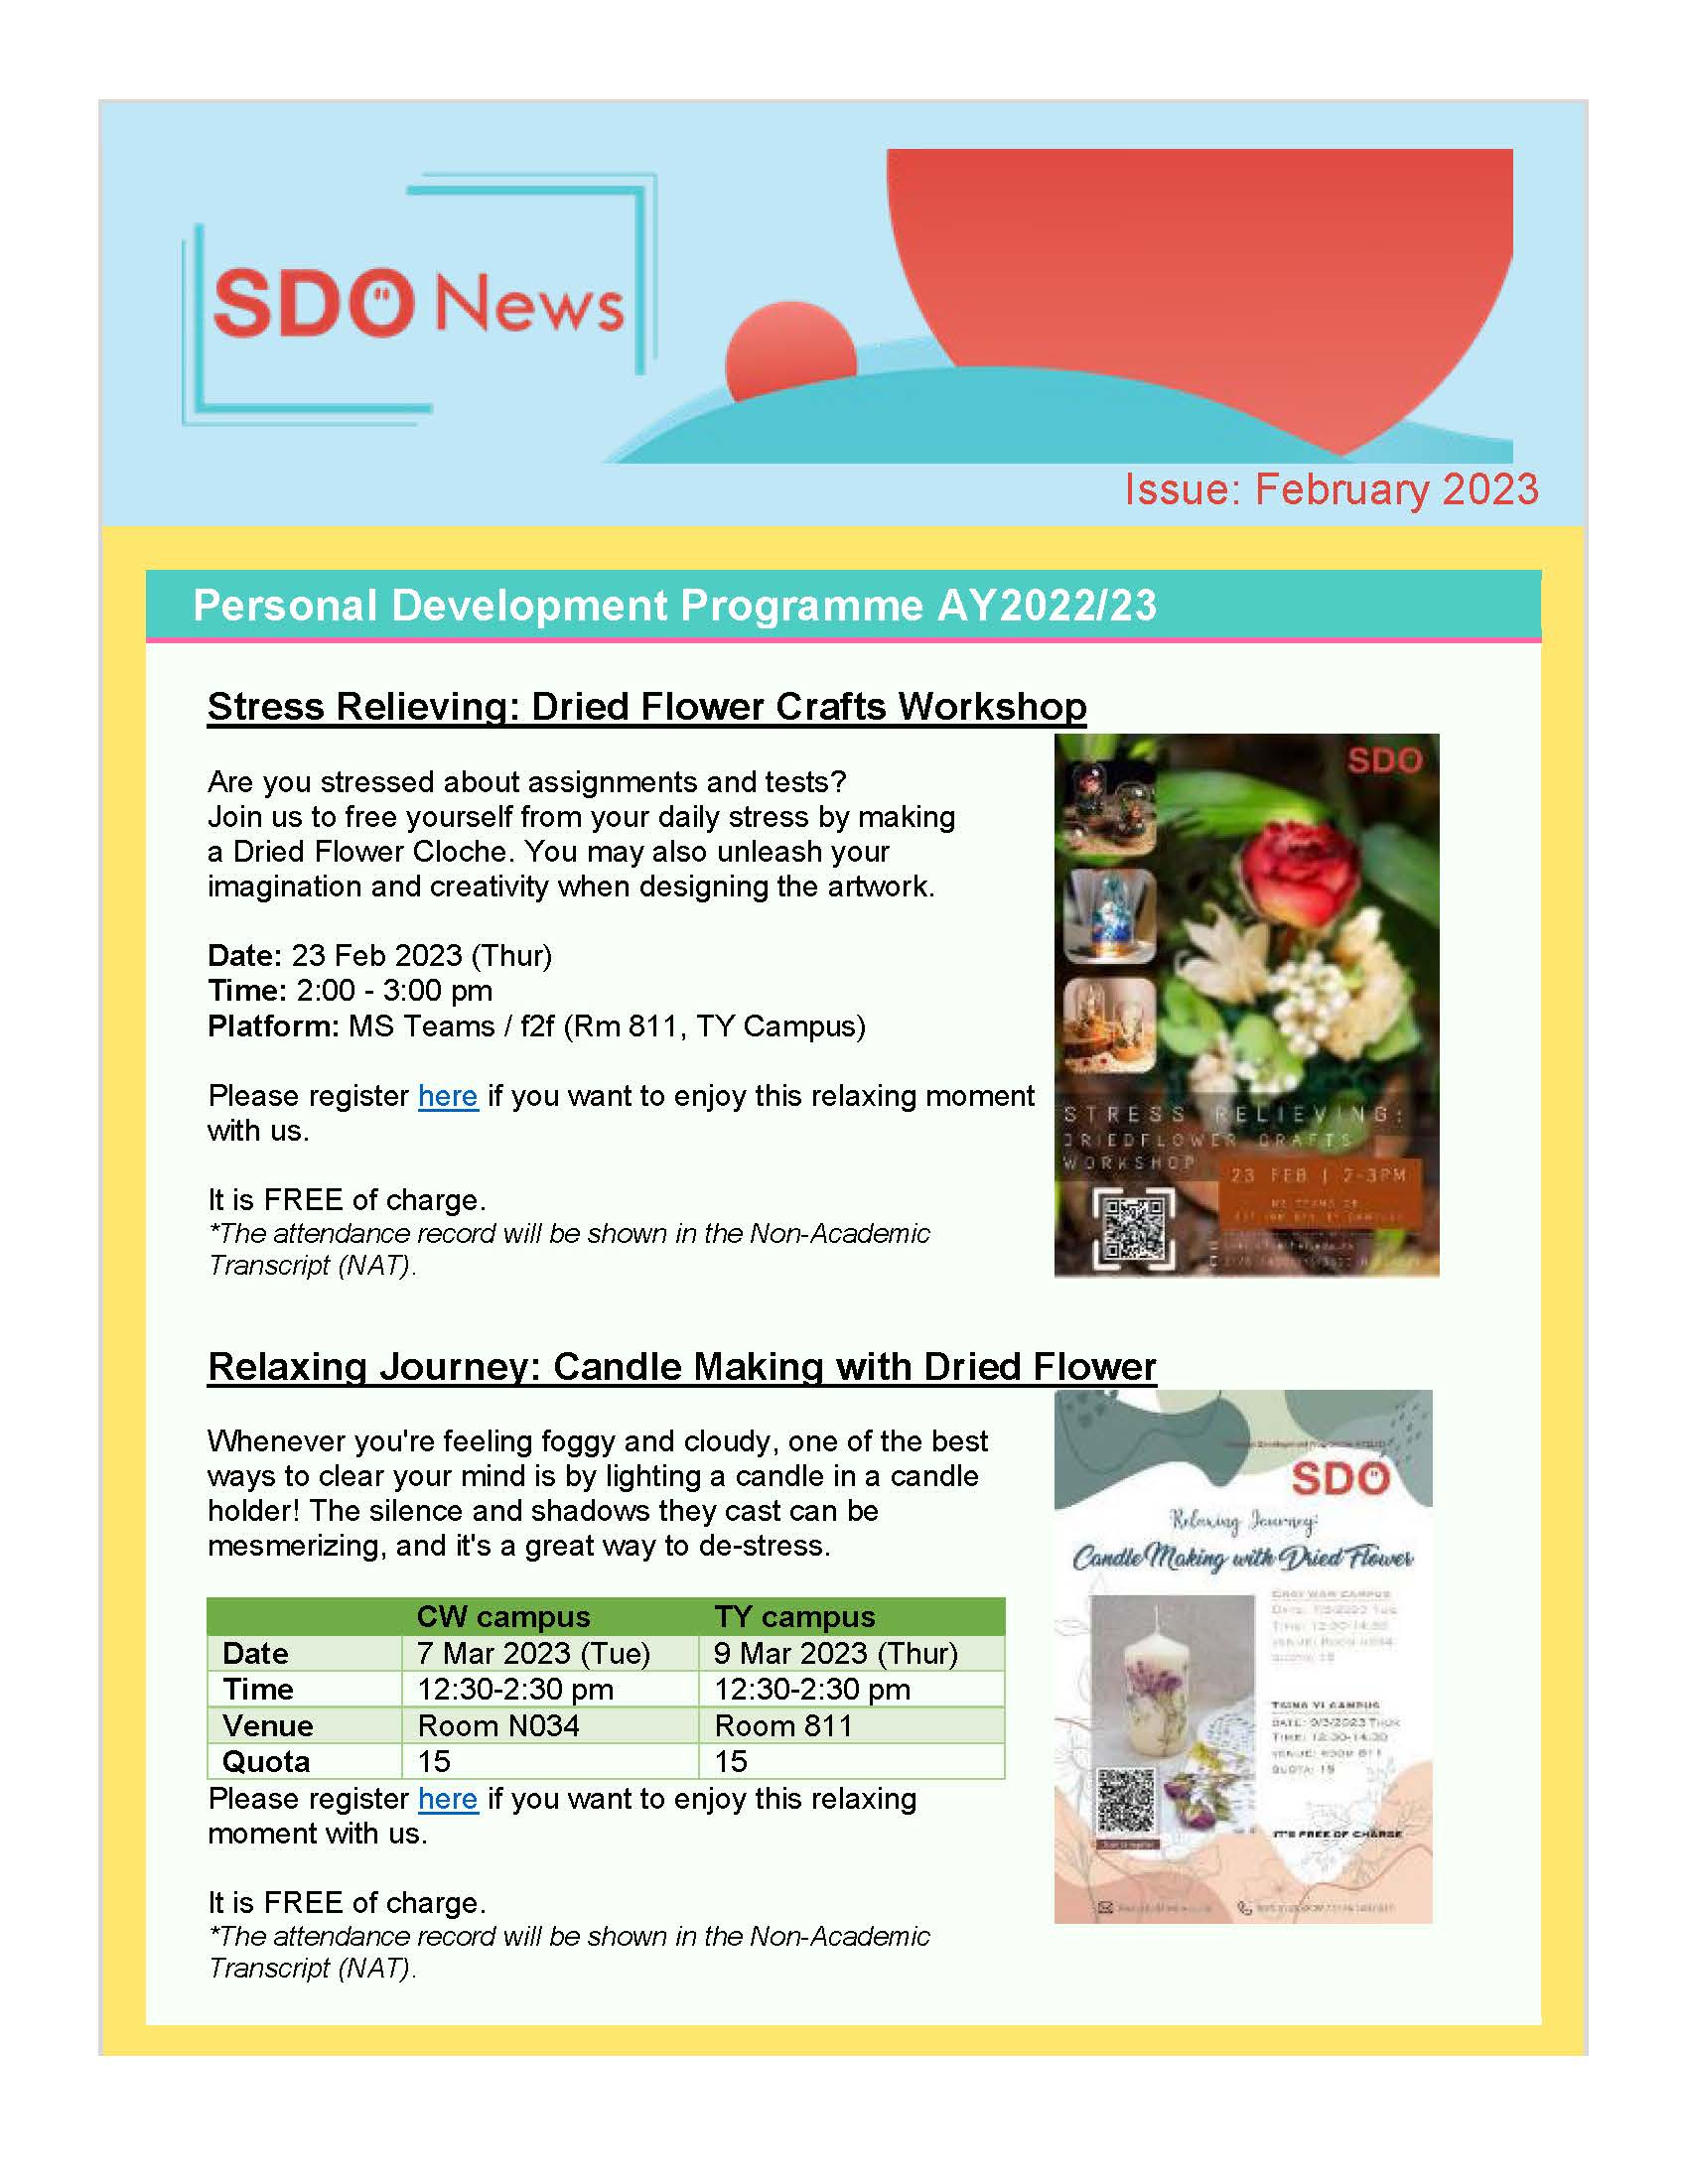 SDO News February Issue